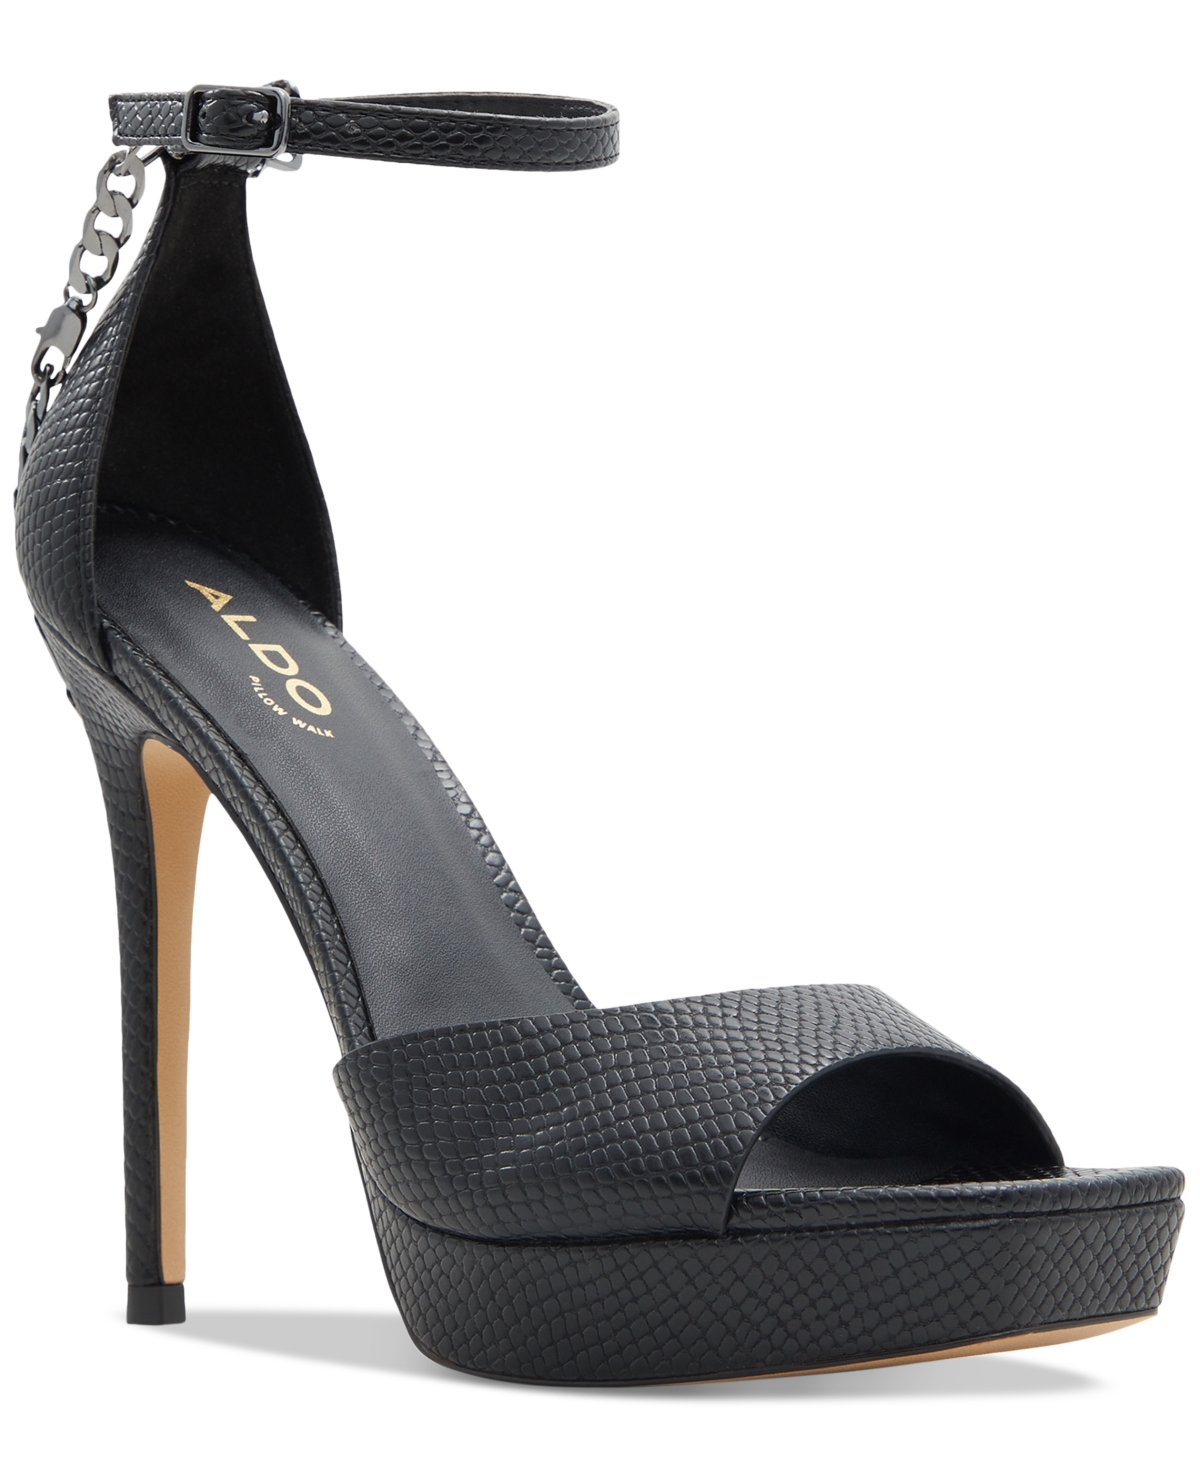 Aldo Prisilla Platform Chain Dress Sandals Women's Shoes